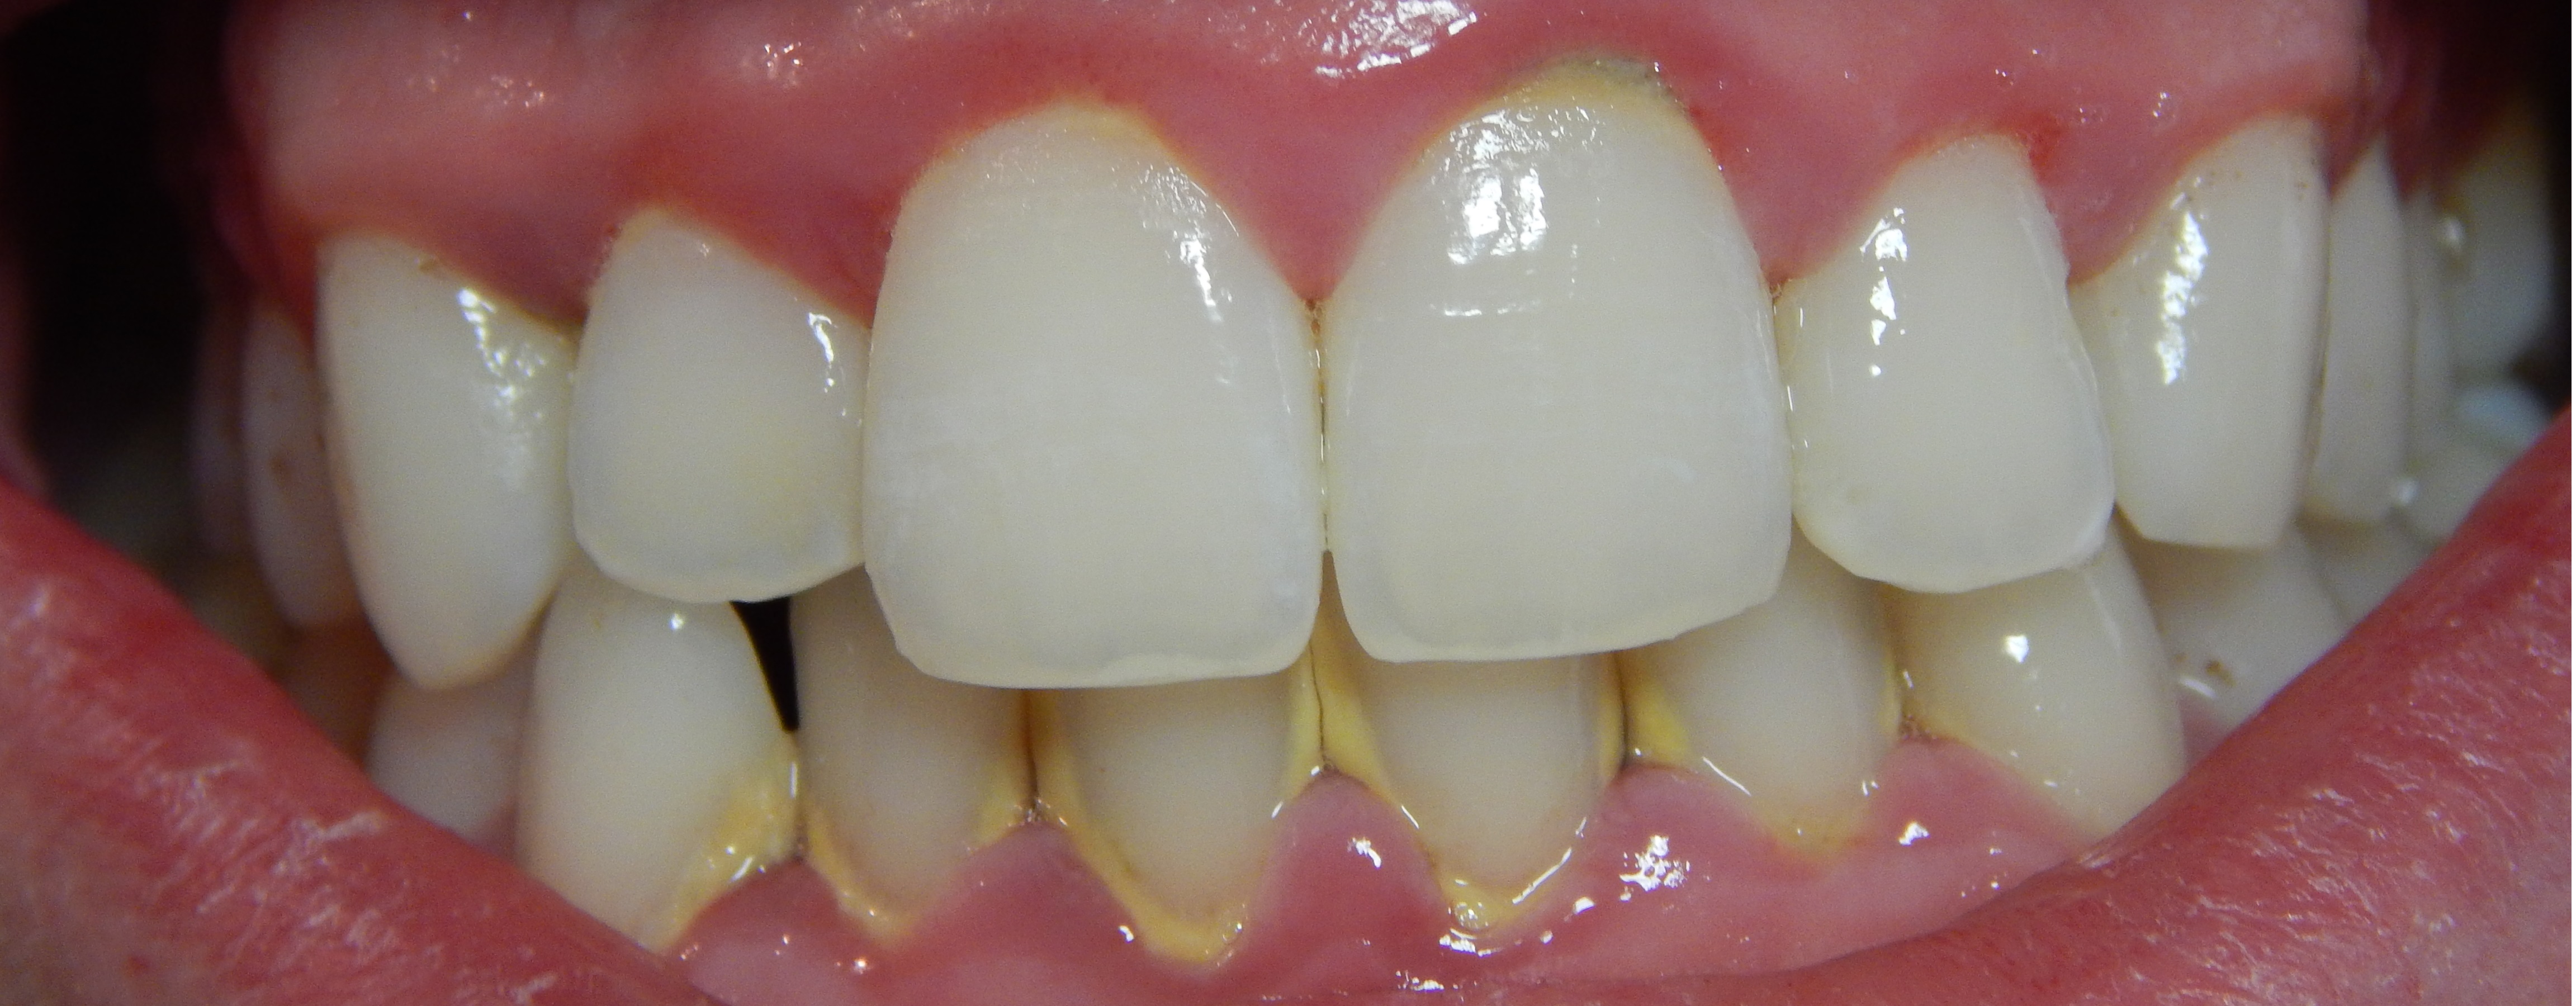 牙龈出血怎样治疗比较好-成都极光口腔医院